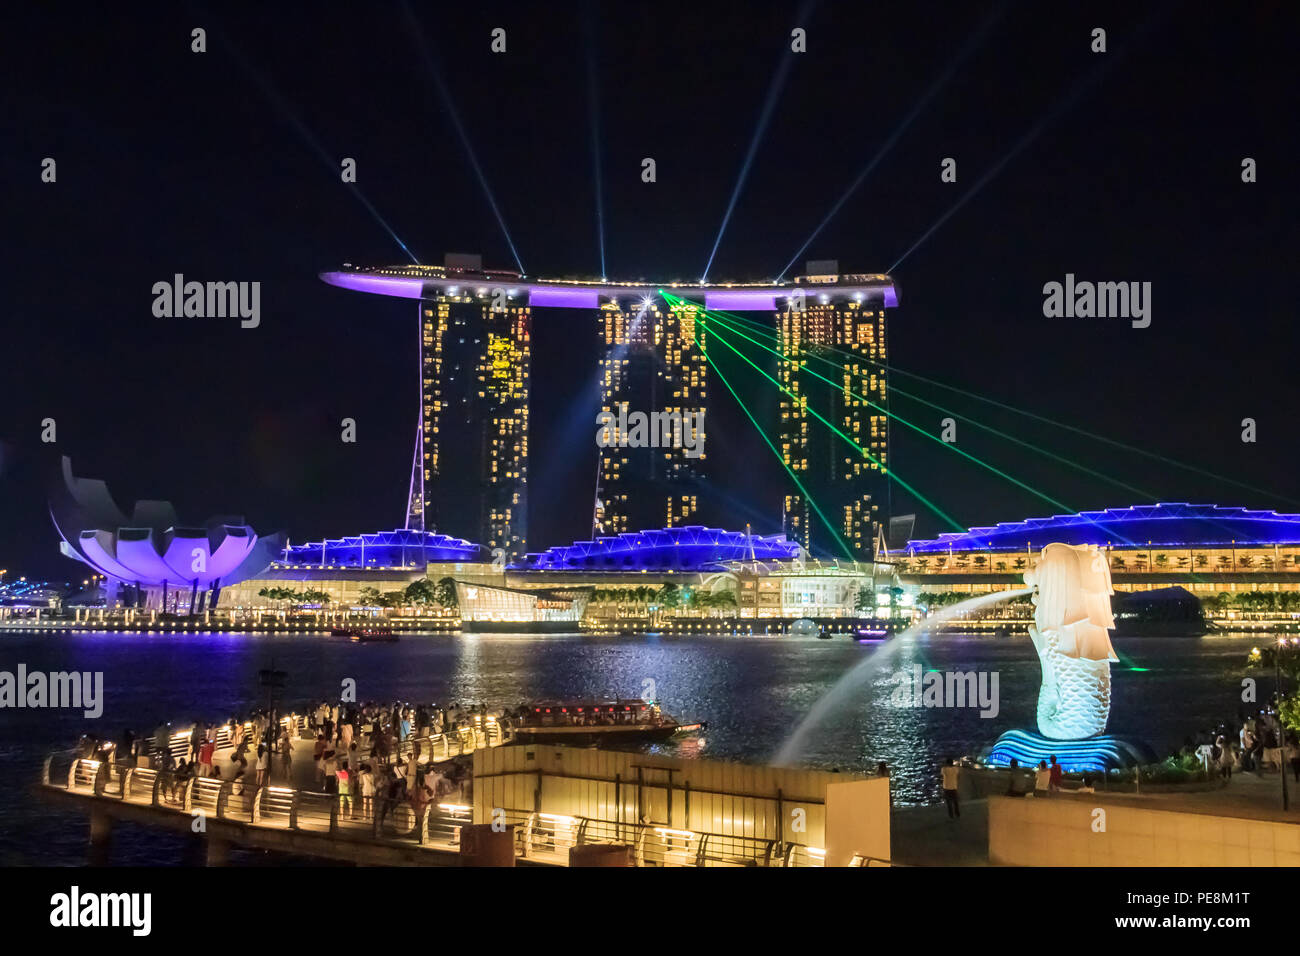 Singapour, Singapour - le 12 août 2013 : Avis d'émerveillement plein, le plus grand de l'Asie du sud-est de la lumière et de l'eau de Singapour à Marina Bay Sands Hotel Banque D'Images